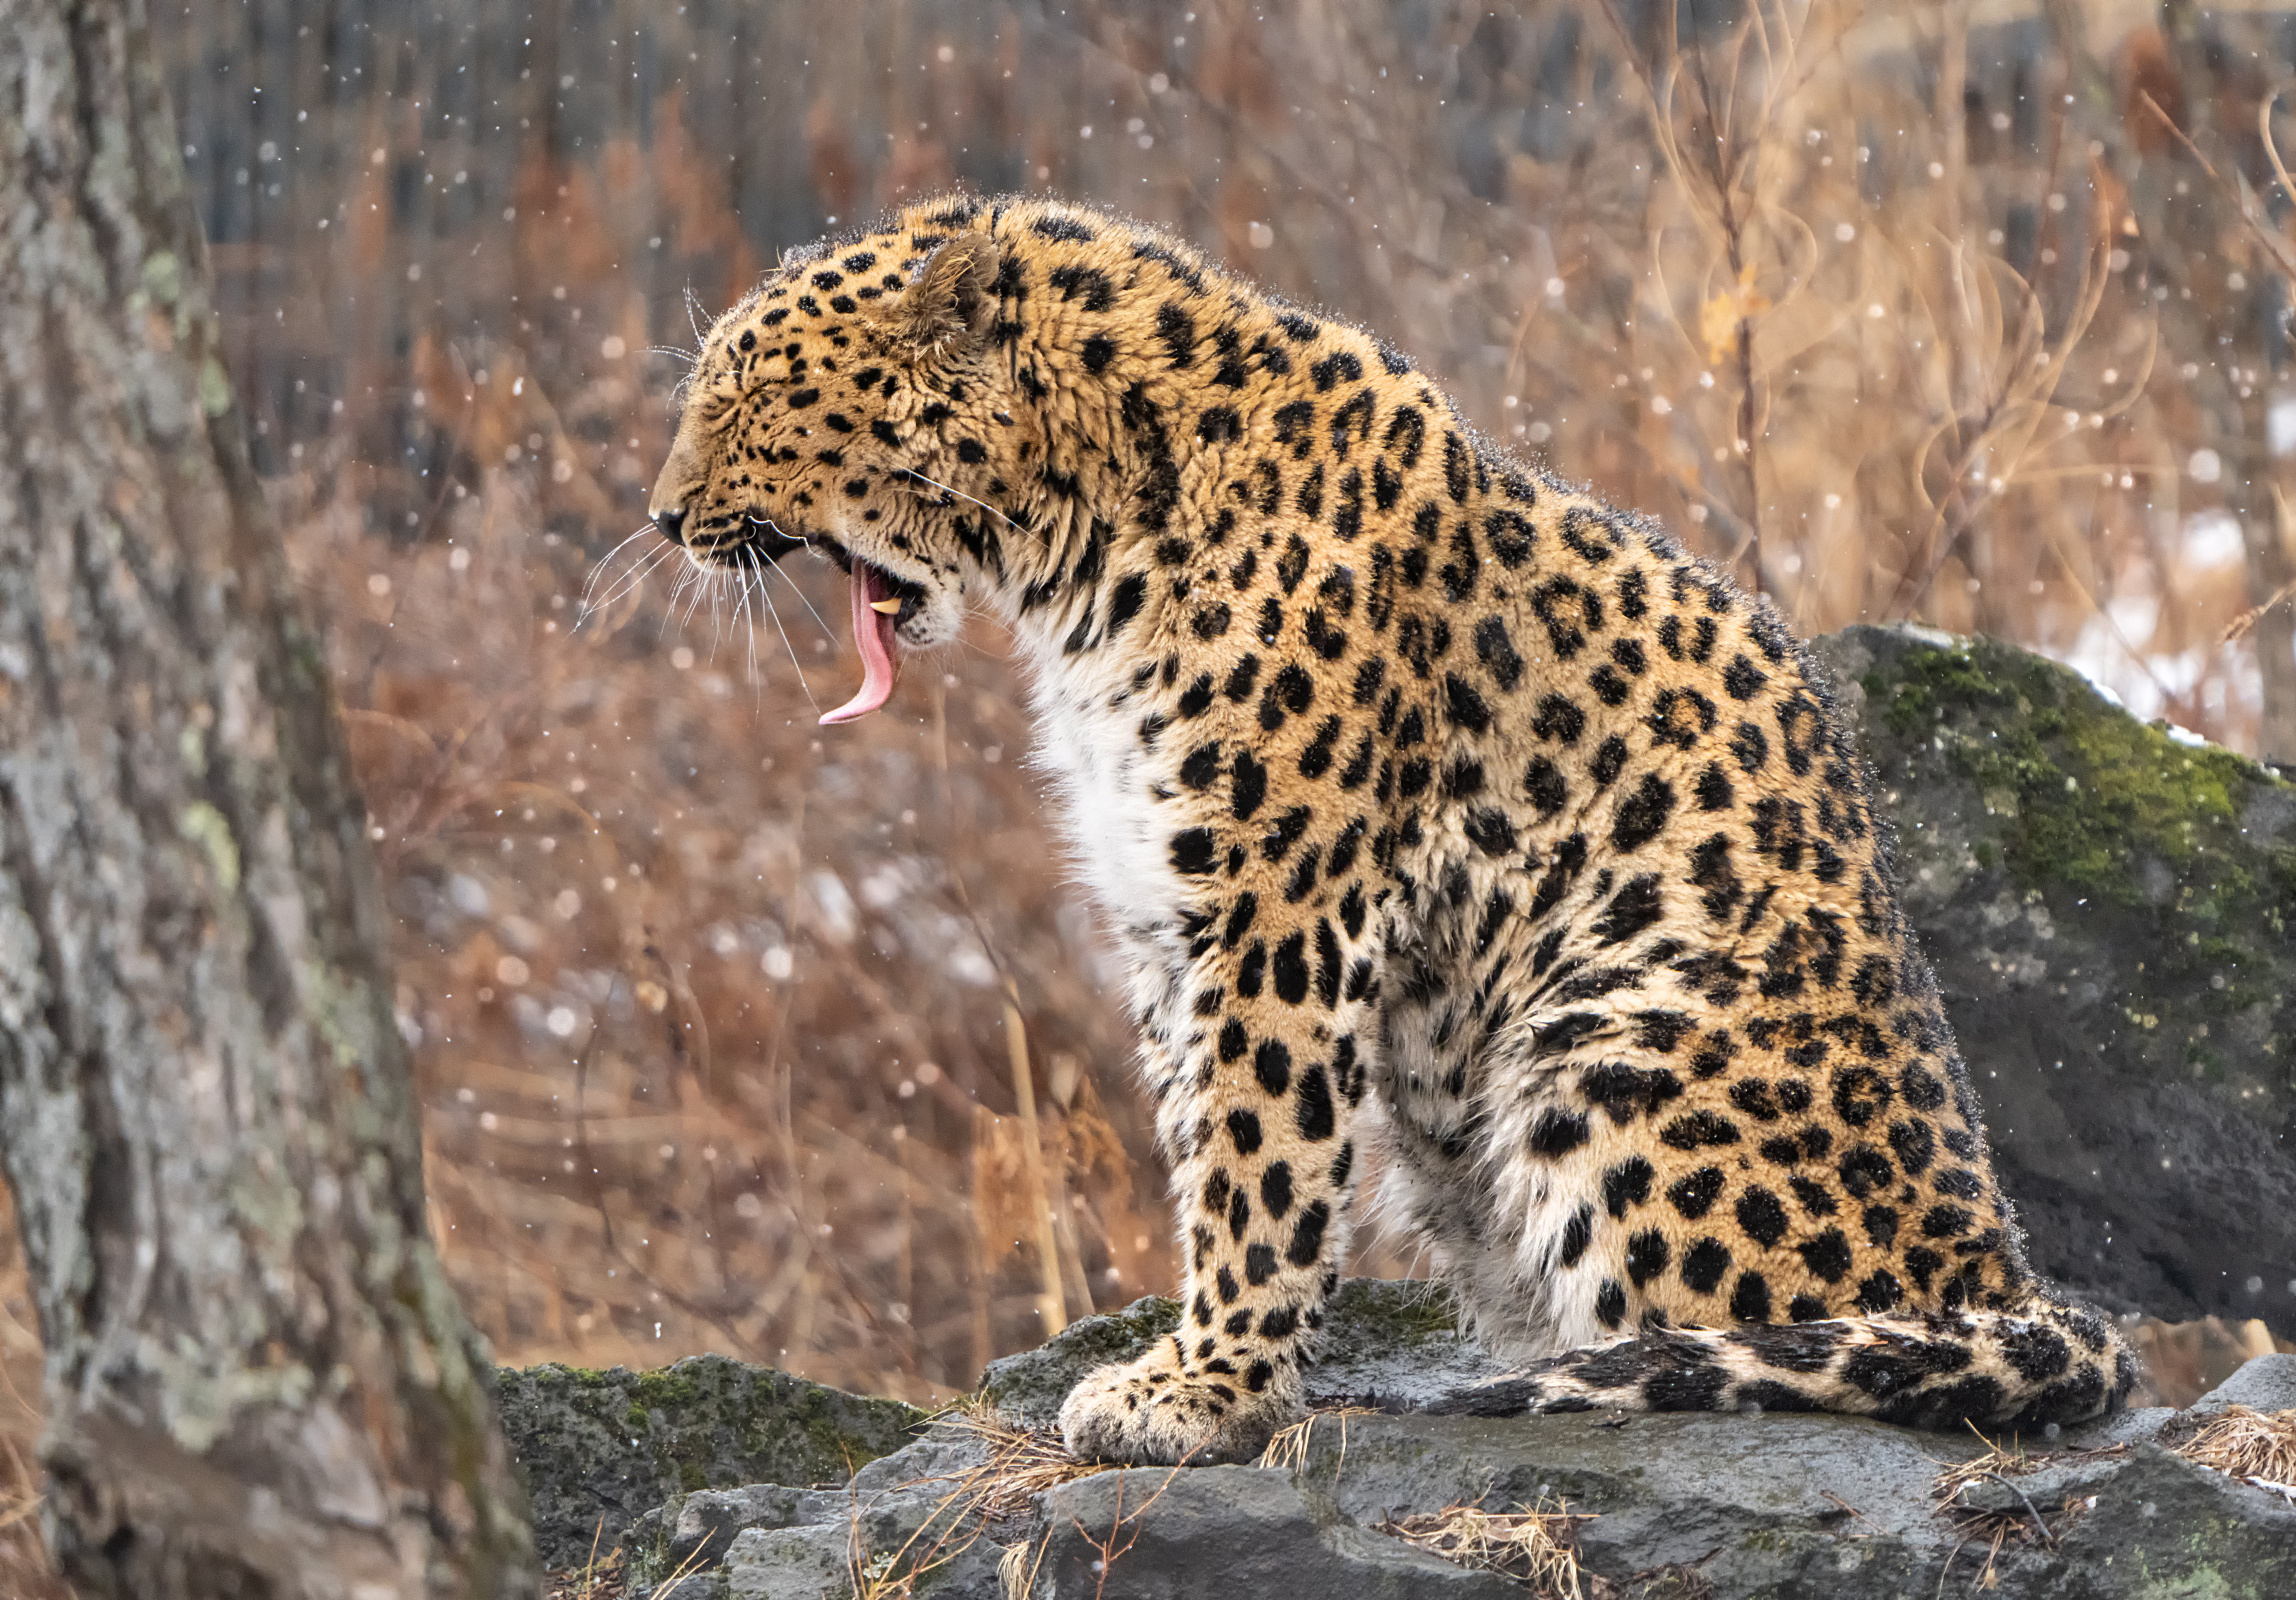 Дальневосточный леопард на своей земле. Фото: Ольга Мусиенко, участница конкурса РГО 